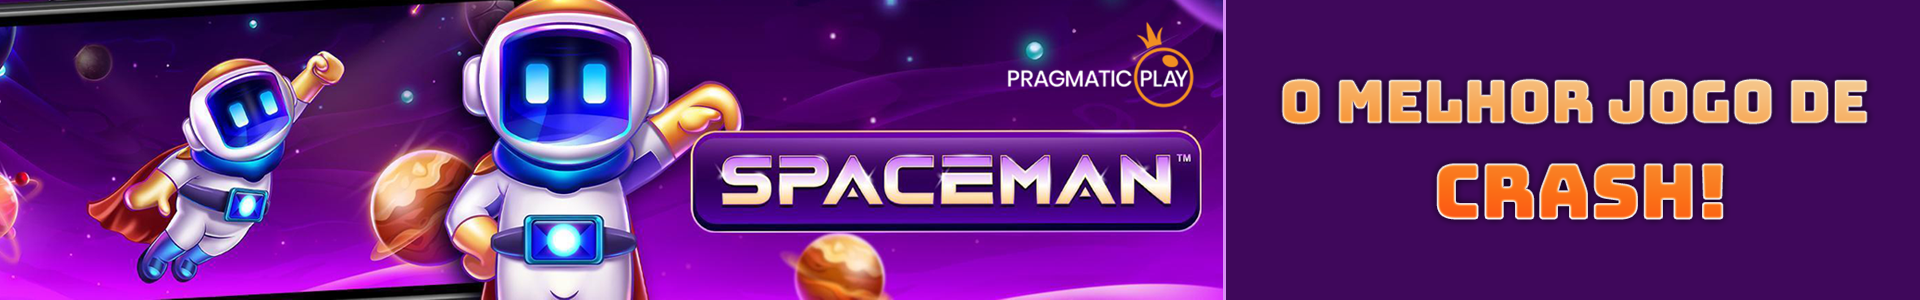 Como funciona o jogo SpaceMan?  Pixbet - Casa de Apostas com